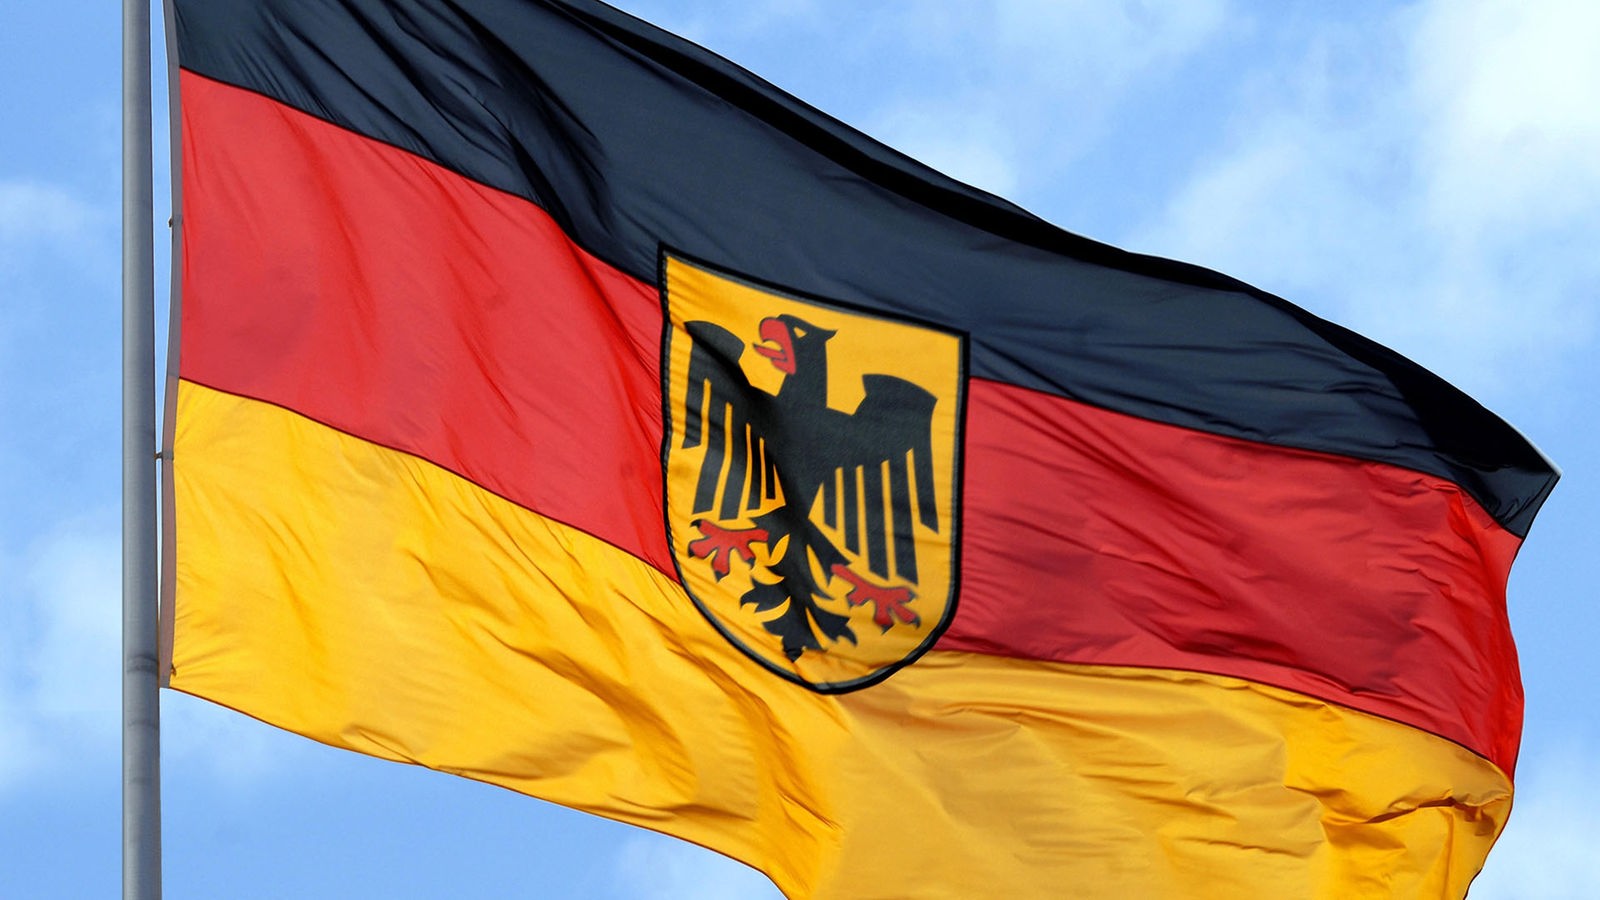 Flaggen und Fahnen: Deutschlandflagge - Kommunikation - Gesellschaft -  Planet Wissen